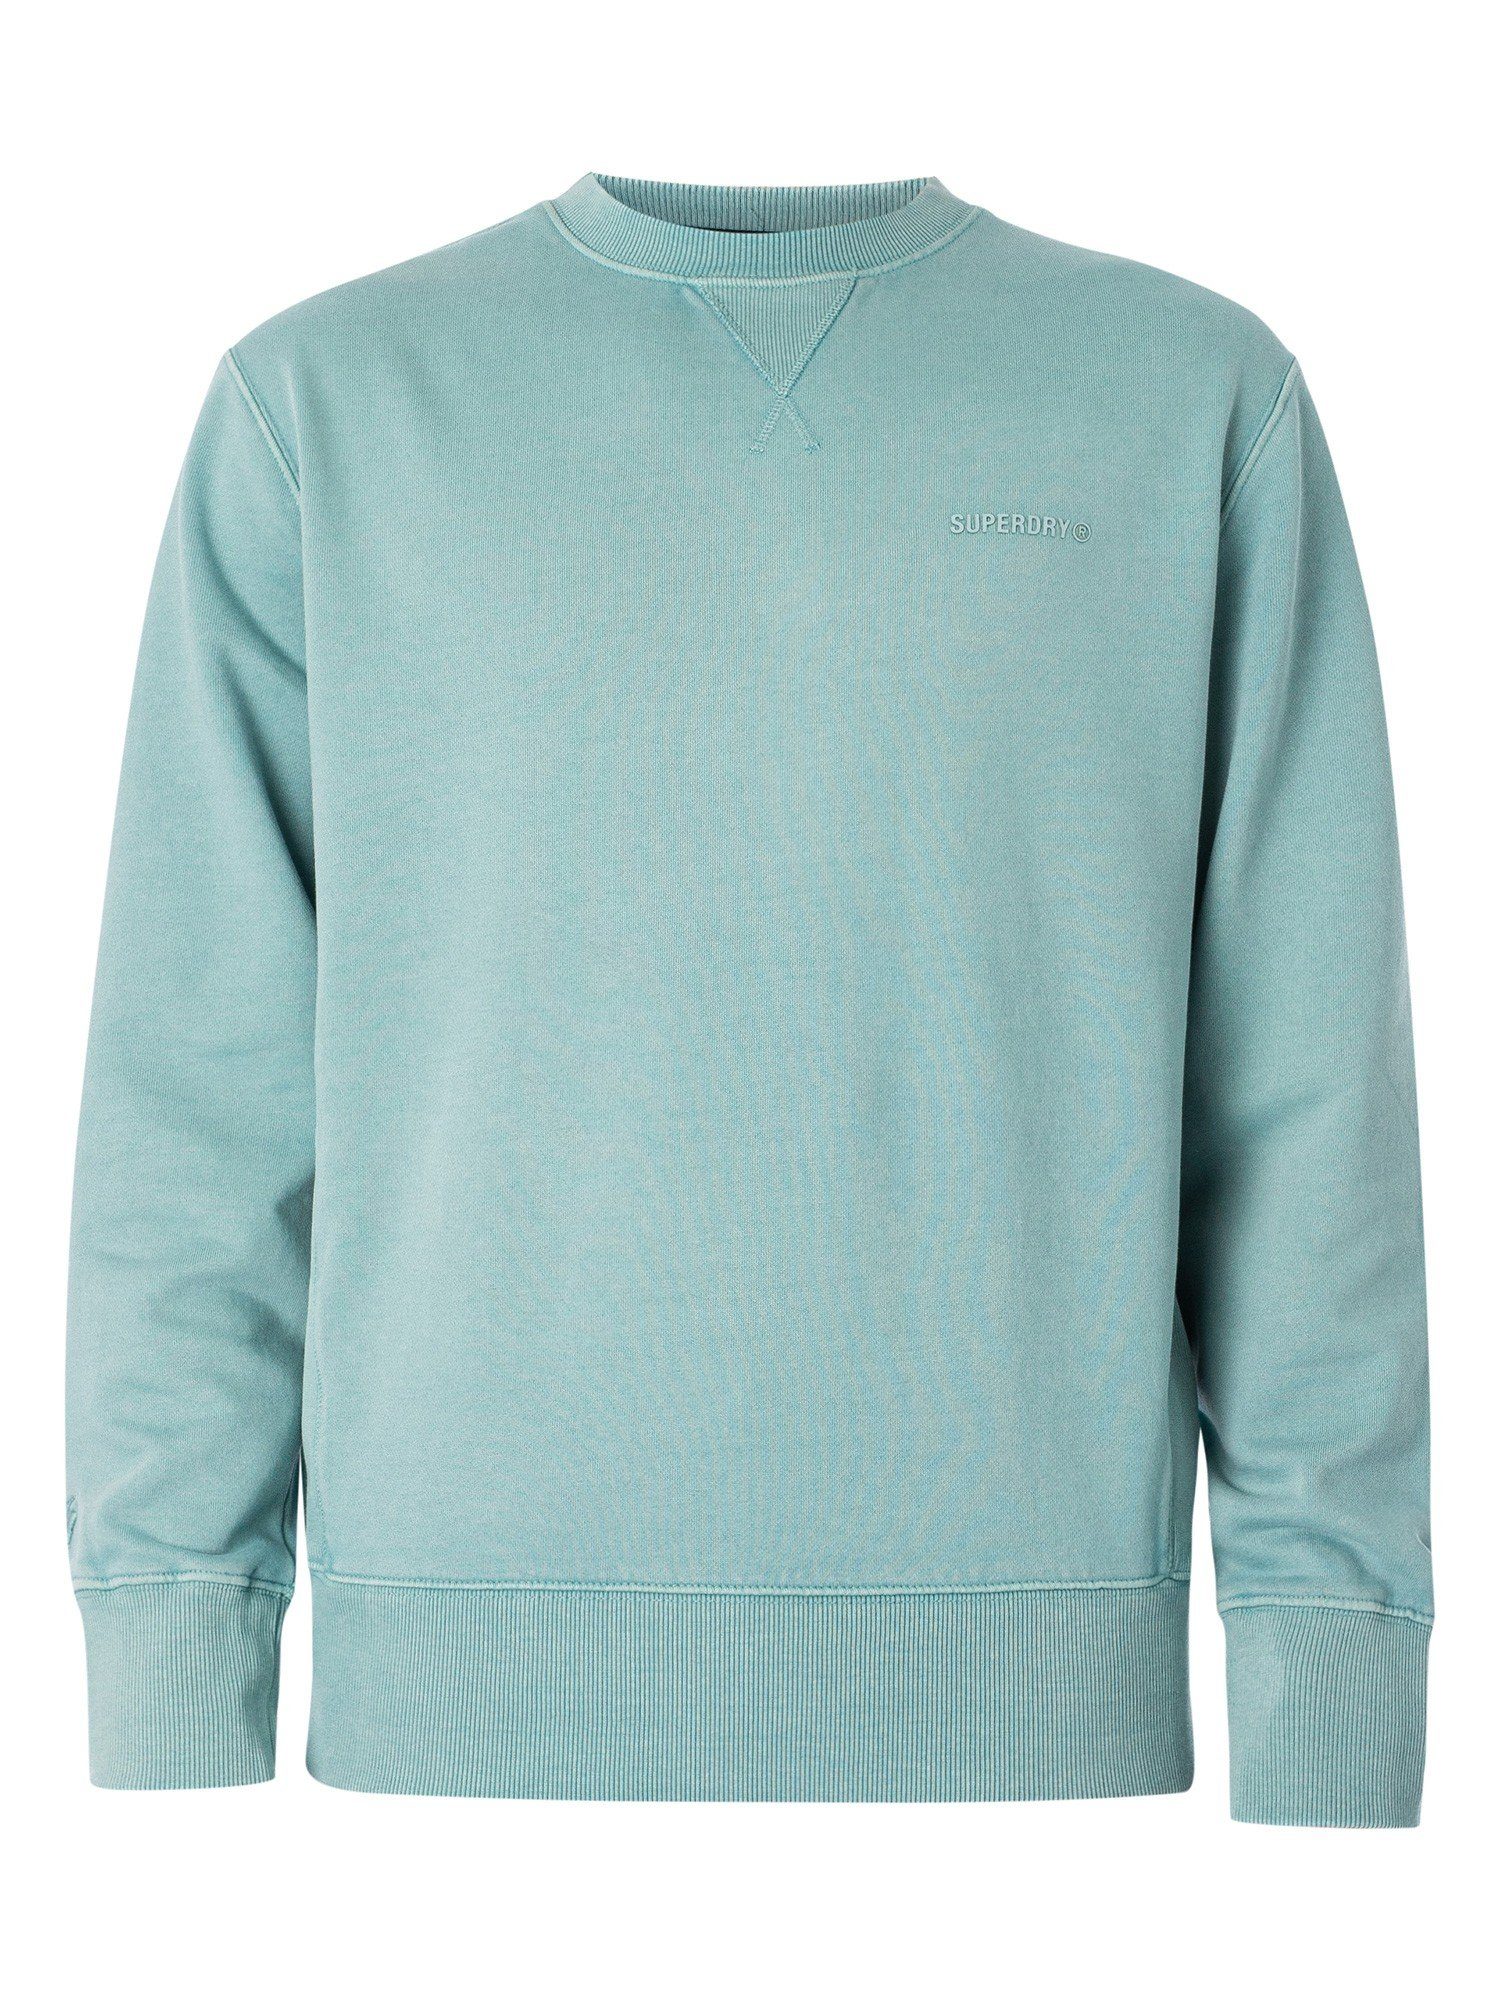 Rundhalsausschnitt mit Superdry Sweatshirt Pullover Sweatshirt hellblau